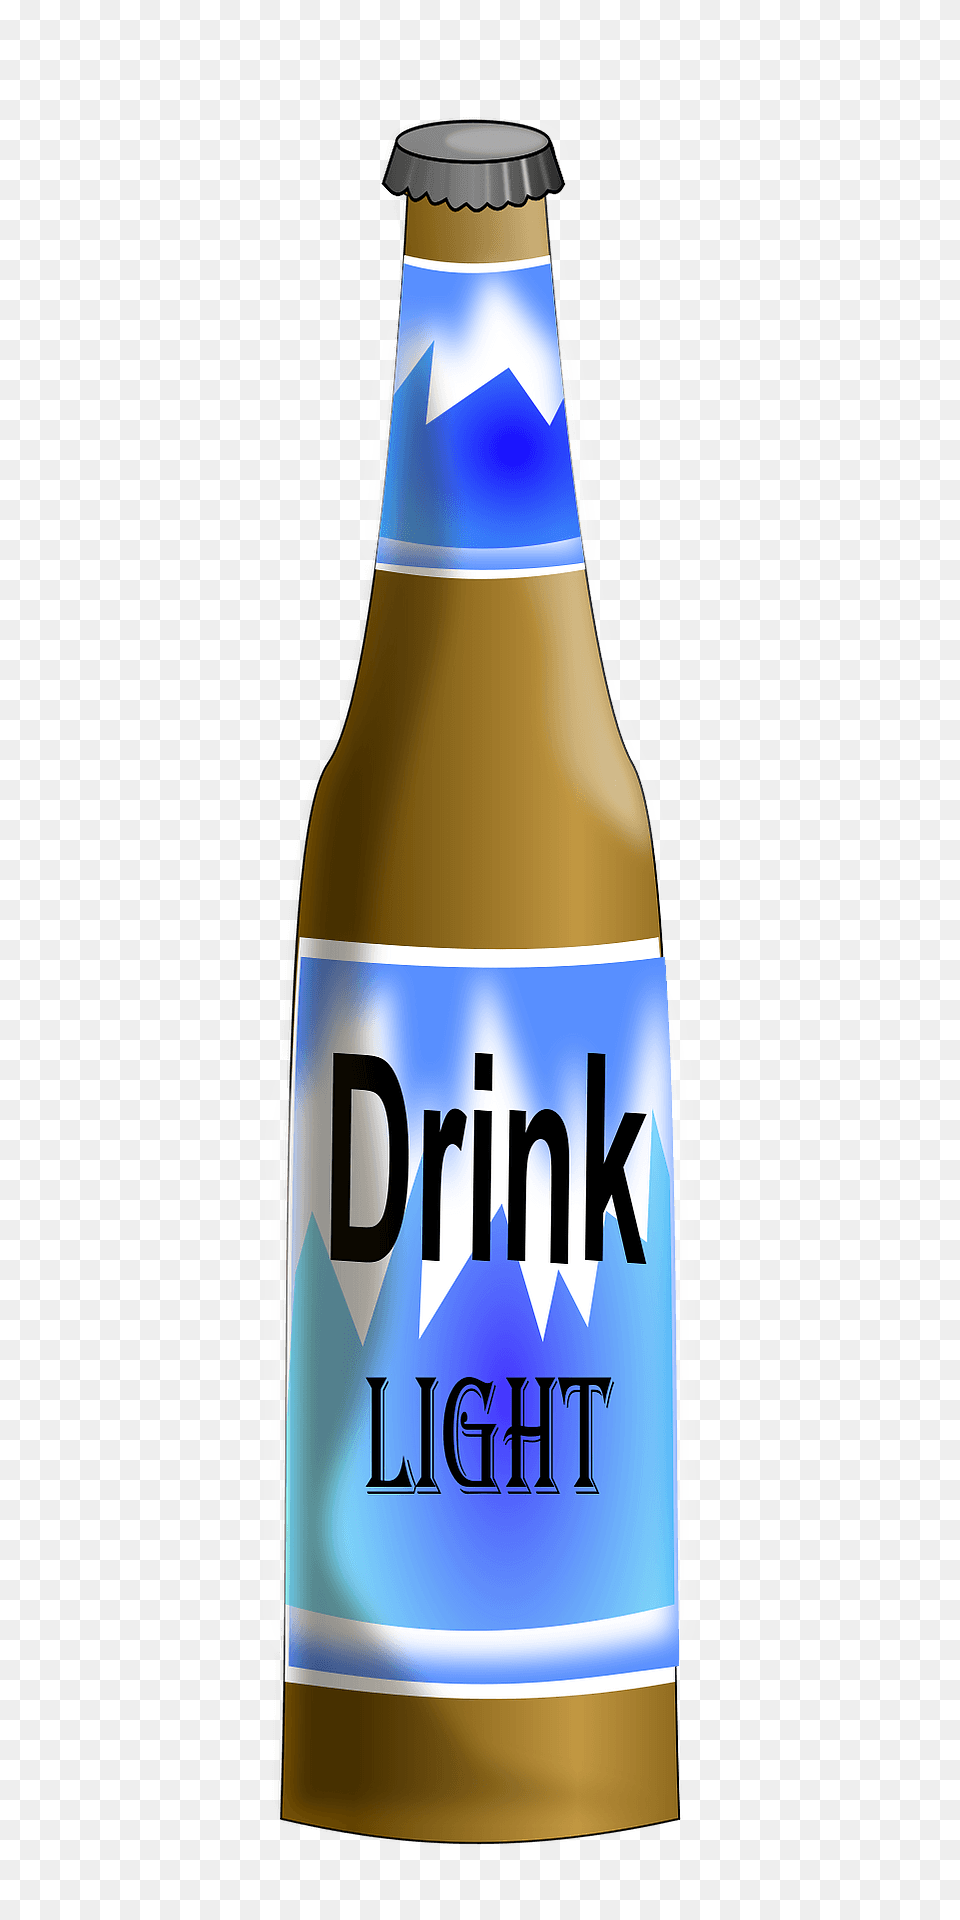 Beer Bottle Clipart, Alcohol, Beverage, Lager, Beer Bottle Free Png